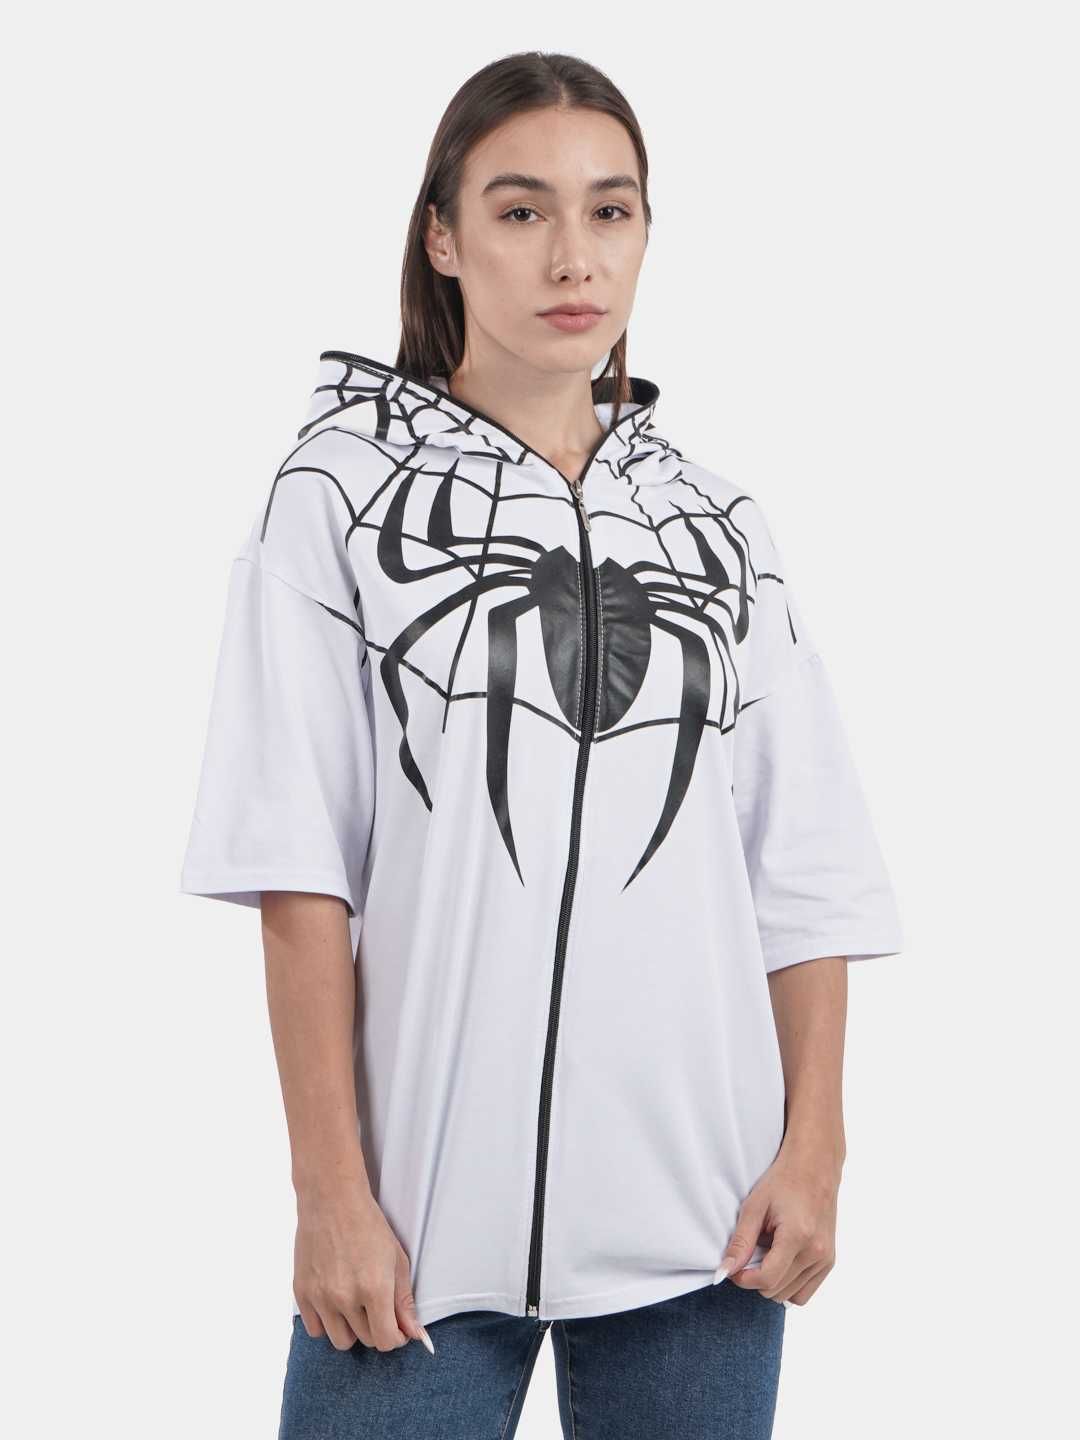 Футболка Человек паук женская, унисекс, футболка для летней погоды